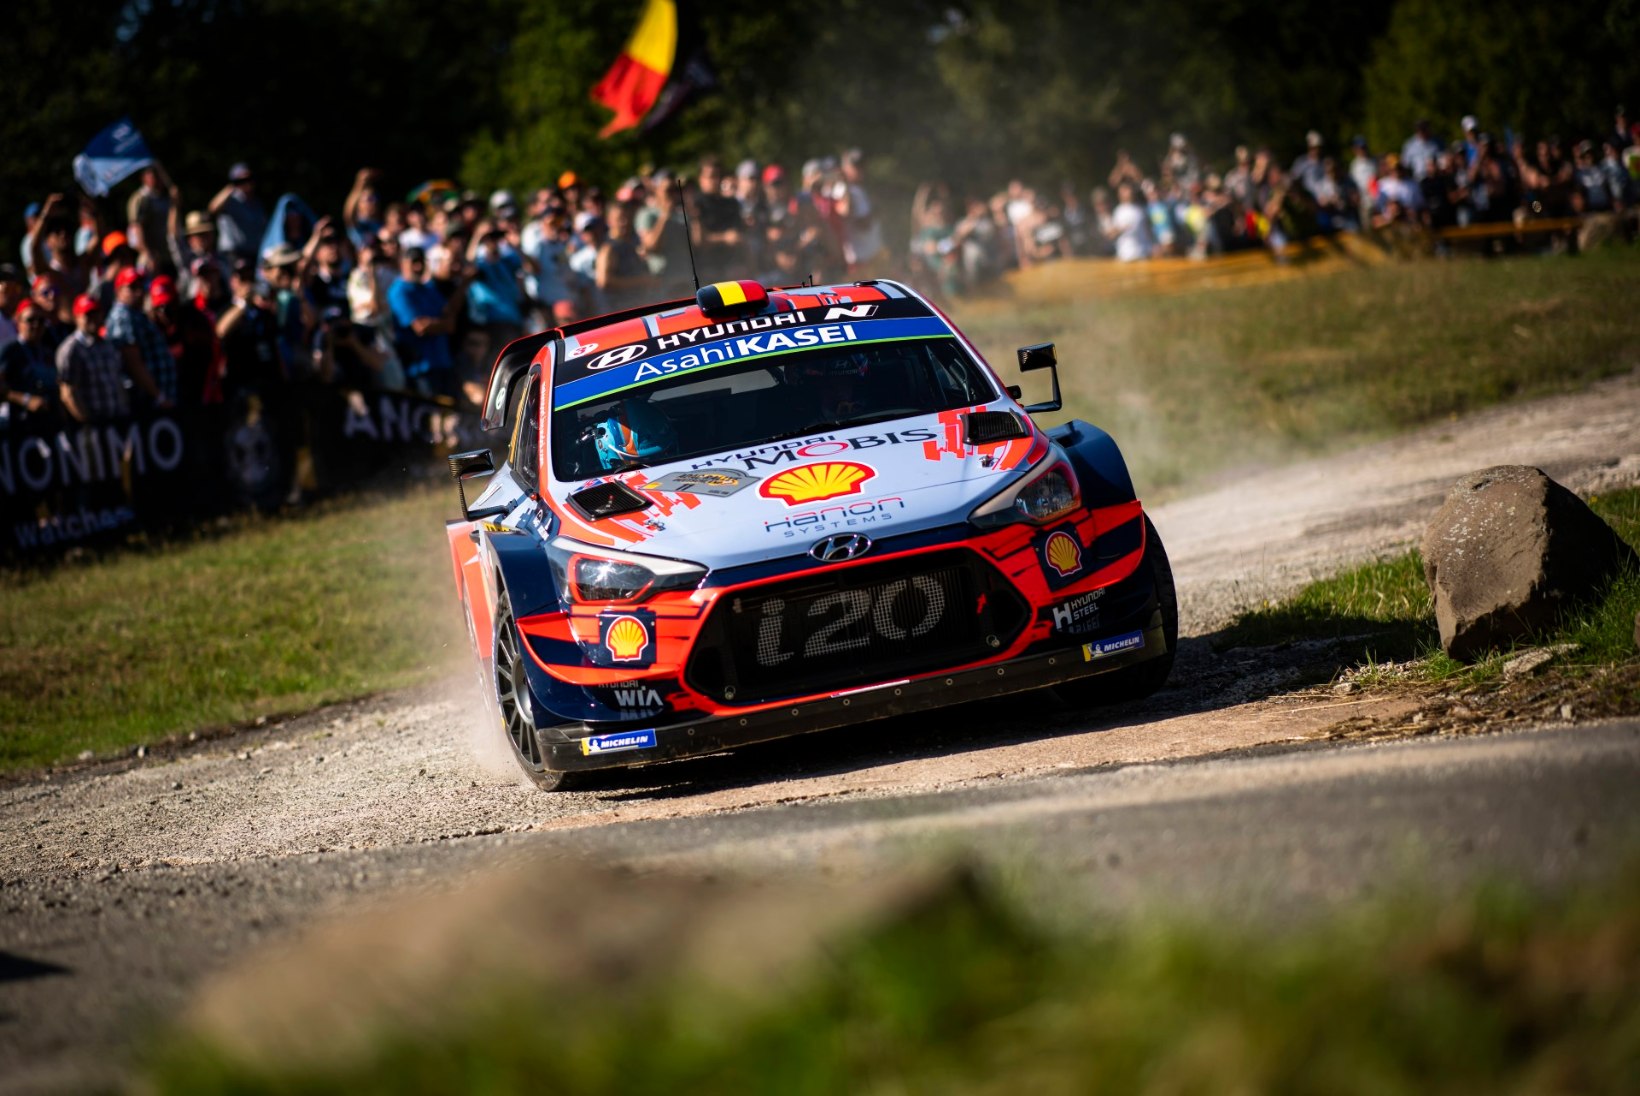 Saksamaal püütakse vaatamata piirangutele kõigest väest WRC etappi korraldada: kaalume kõiki võimalusi